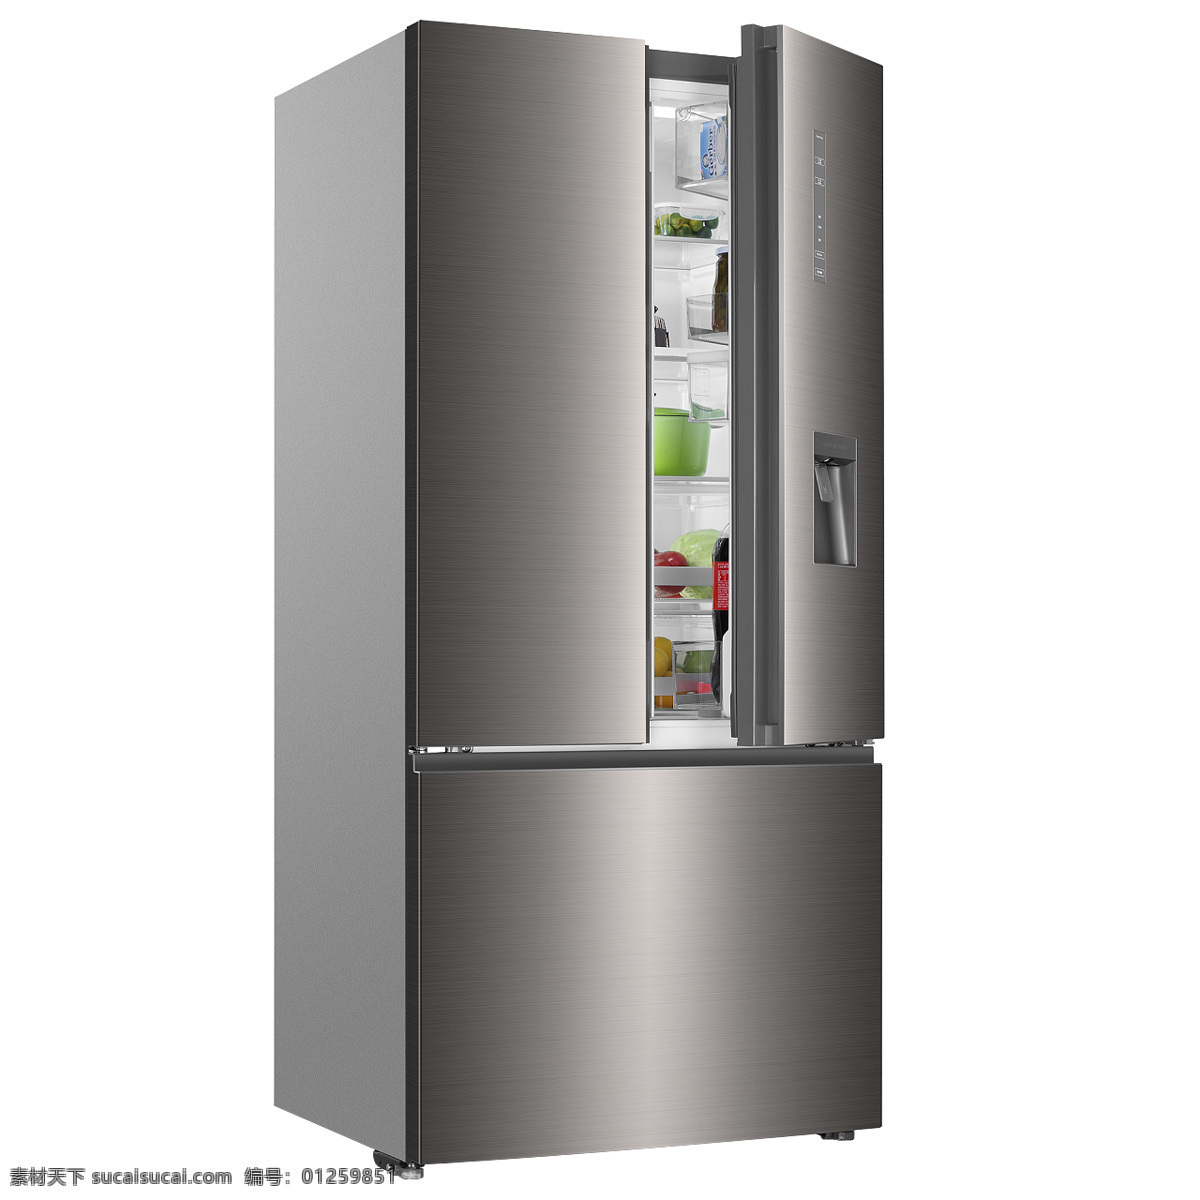 海尔冰箱图片 海尔冰箱 海尔品牌 海尔家电 智能冰箱 多门冰箱 大型冰箱 打开的冰箱 冰箱 生活百科 数码家电